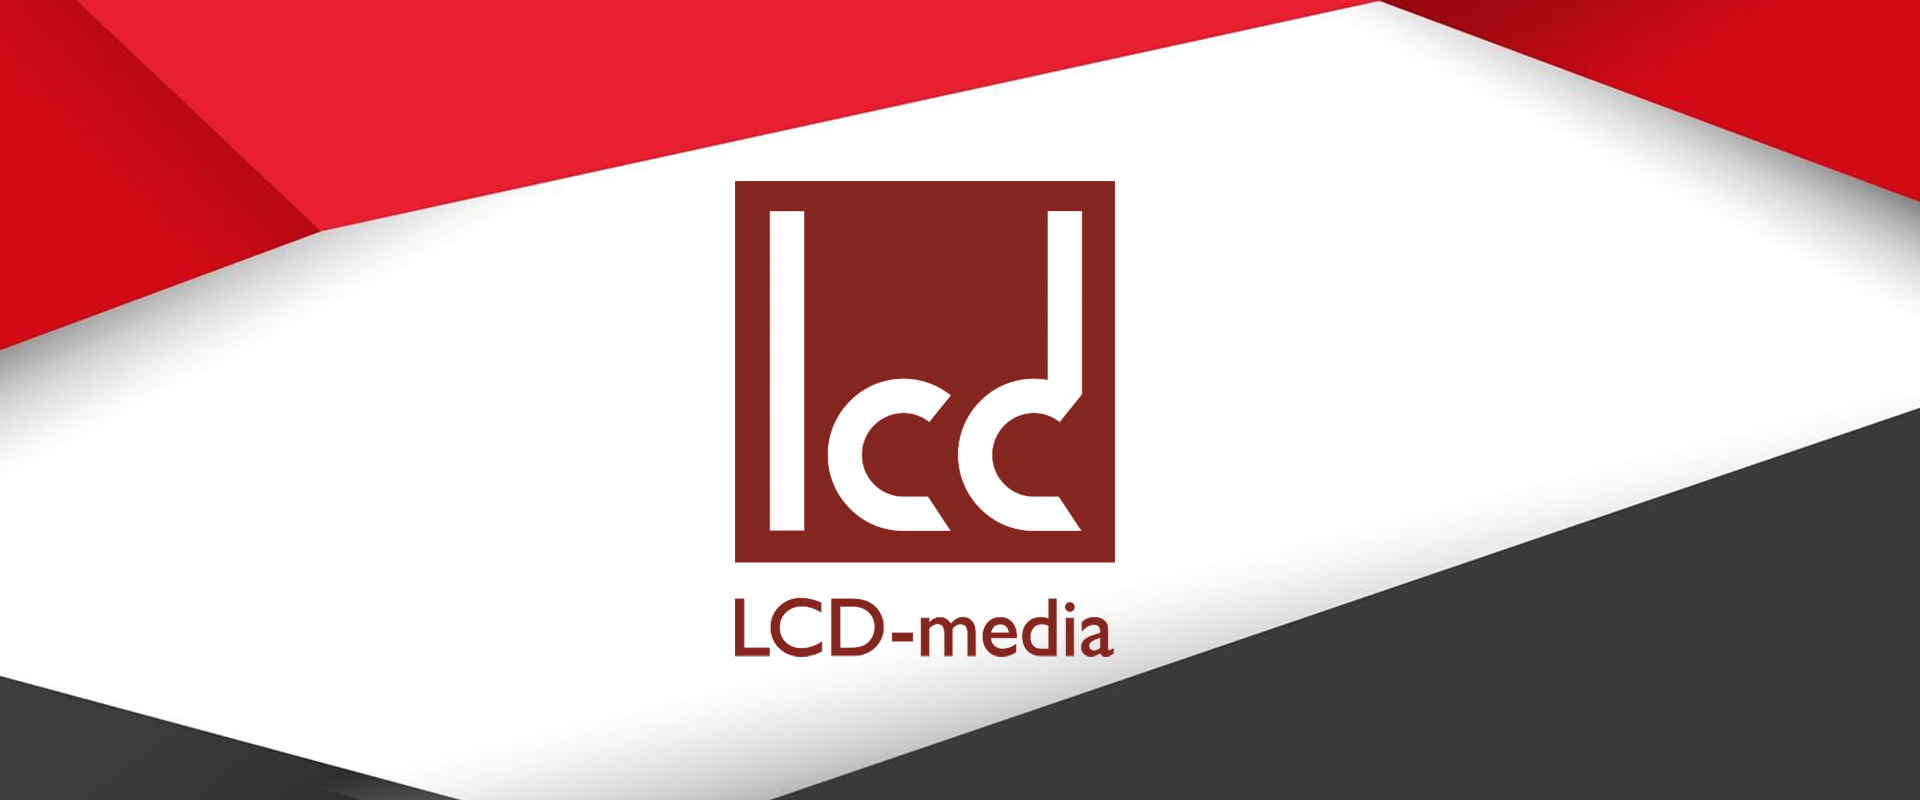 lcd-media - партнер выставки-презентации Содружества